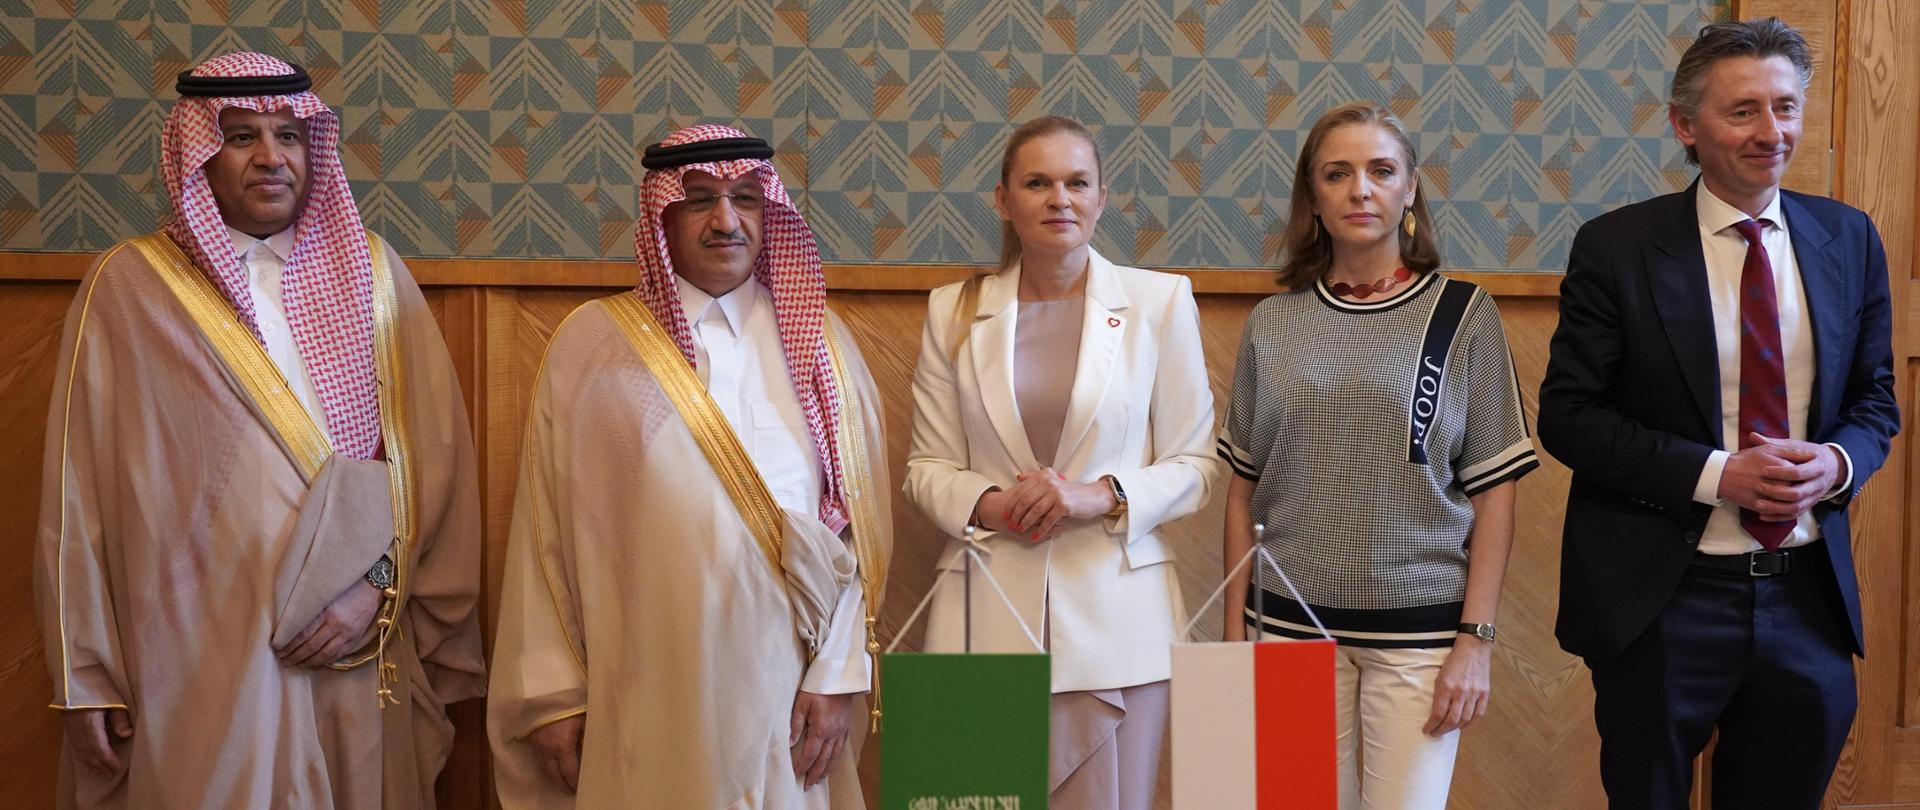 Minister Edukacji Barbara Nowacka spotkała się z saudyjskim Ministrem Edukacji Yousefem Al-Benyanem. Rozmawiano między innymi o rozwijaniu edukacji przedszkolnej i szkolnej, a także o potrzebie ścisłej współpracy edukacji z nauką.